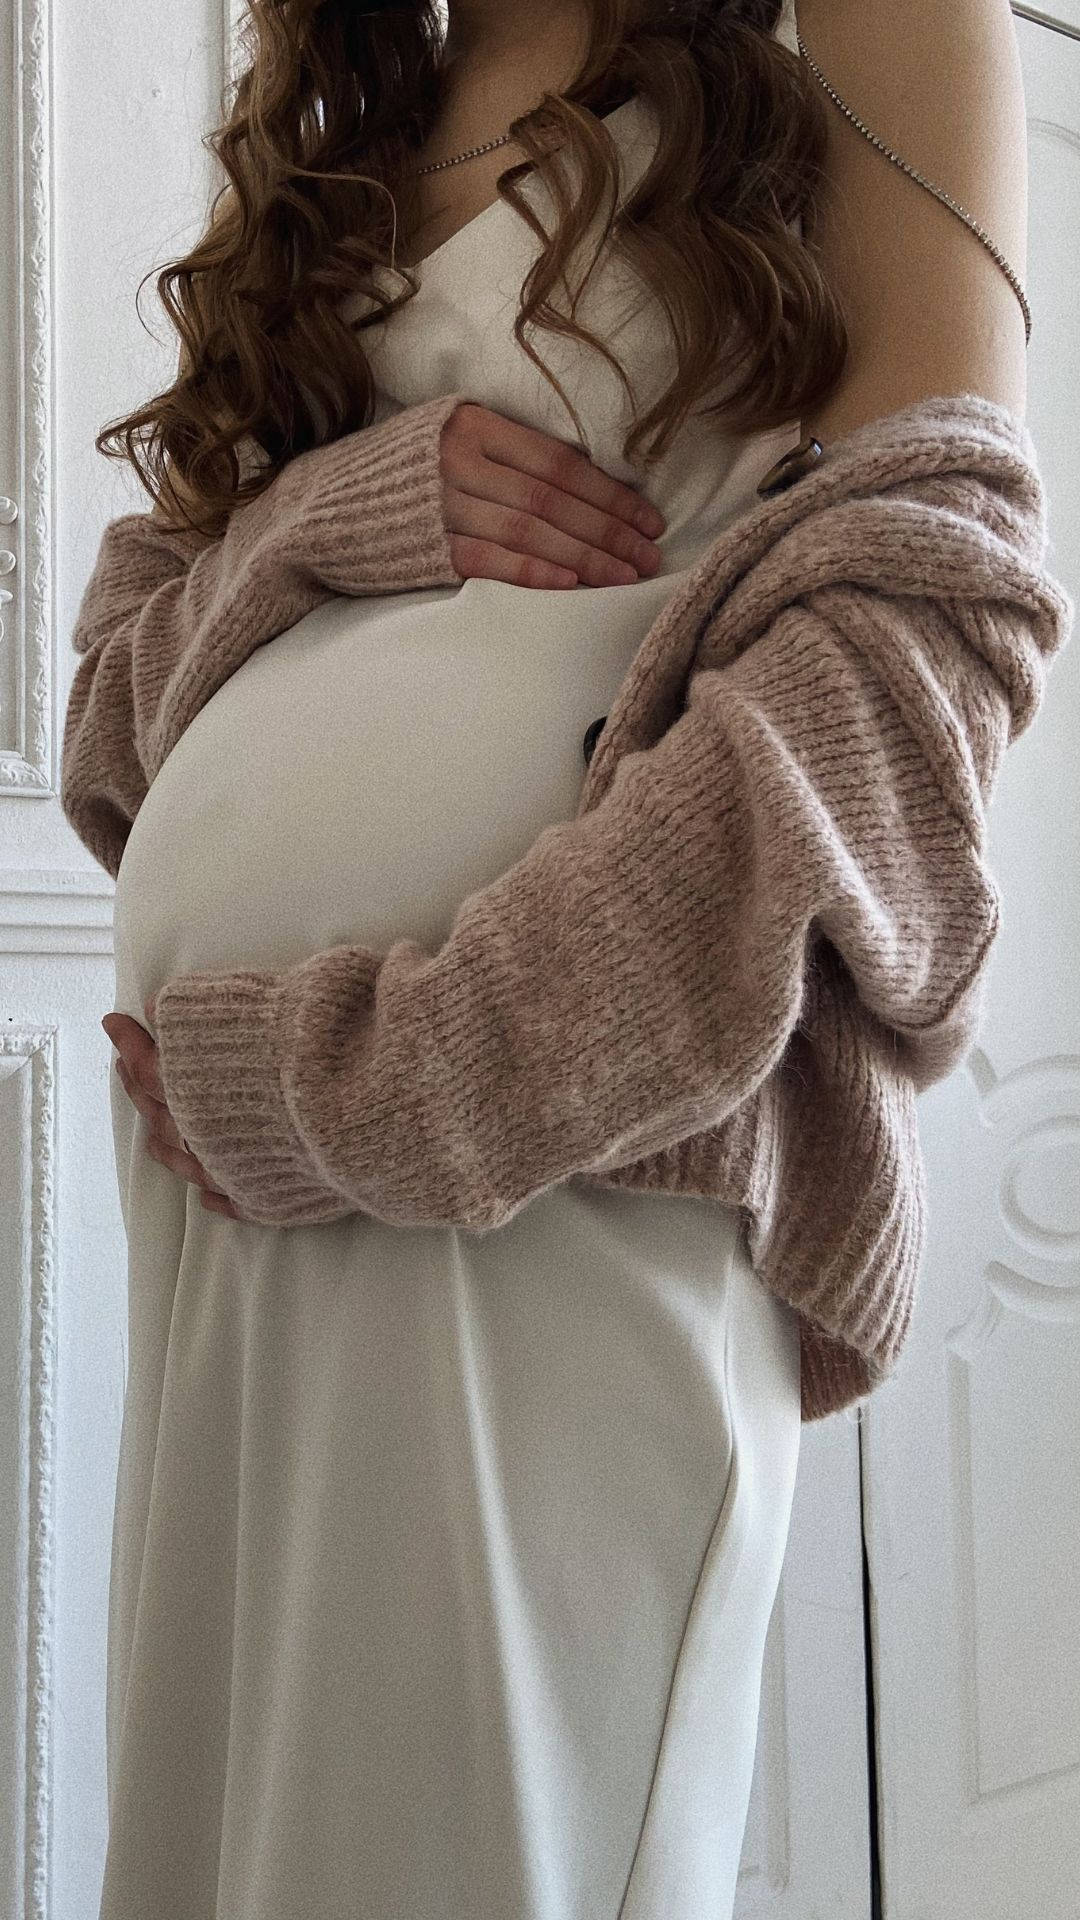 Pregnancy White Dress Wallpaper